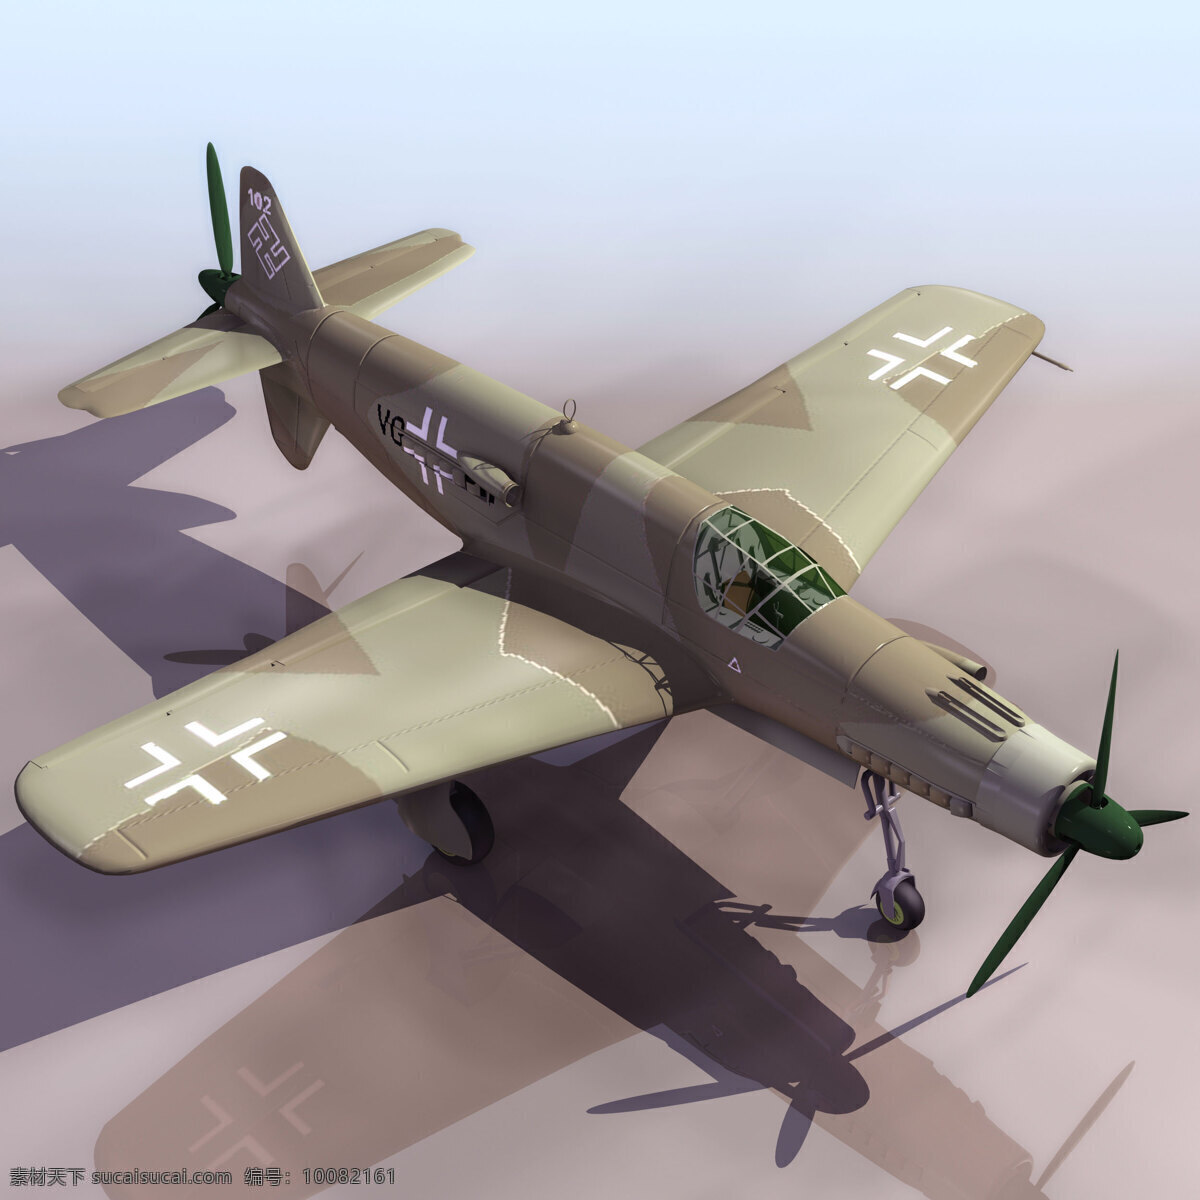 军用 老式 3d 飞机模型 3d飞机模型 3d设计模型 max 军用飞机 战队机 模板下载 机场设备模型 3d模型素材 其他3d模型